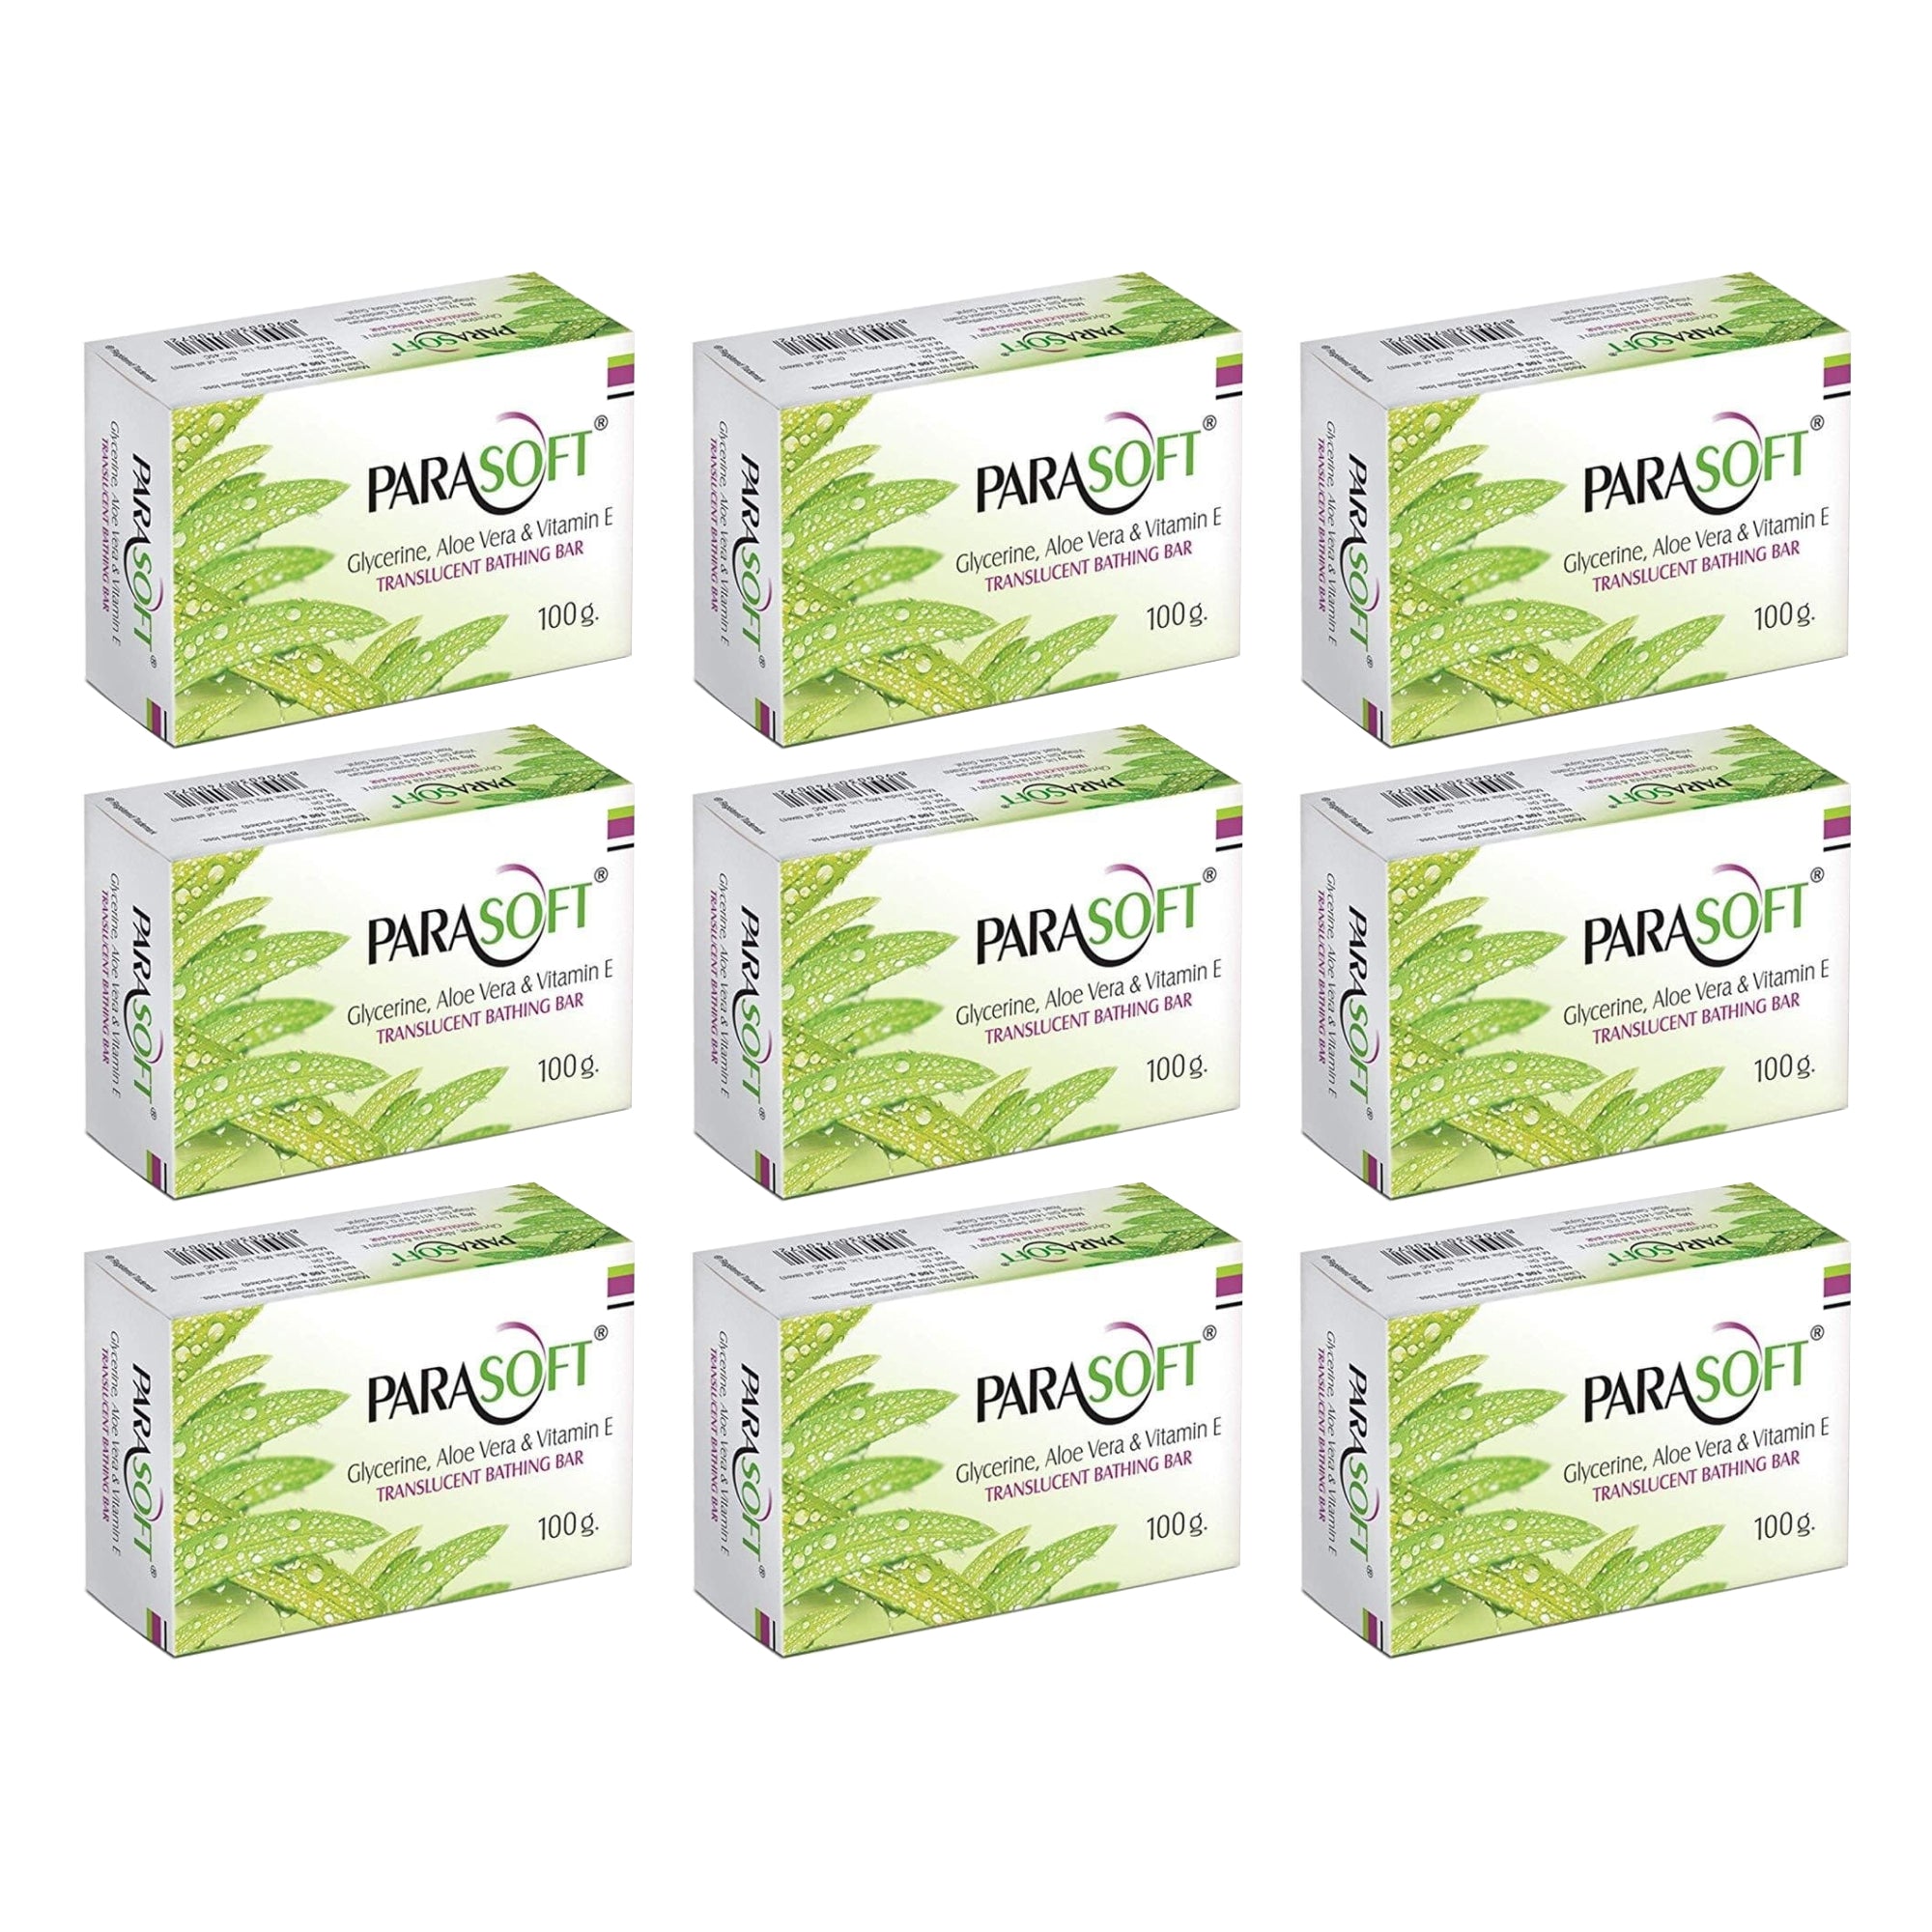 Shoprythm Dry,Parasoft Pack of 9 Salve Parasoft Soap 100g